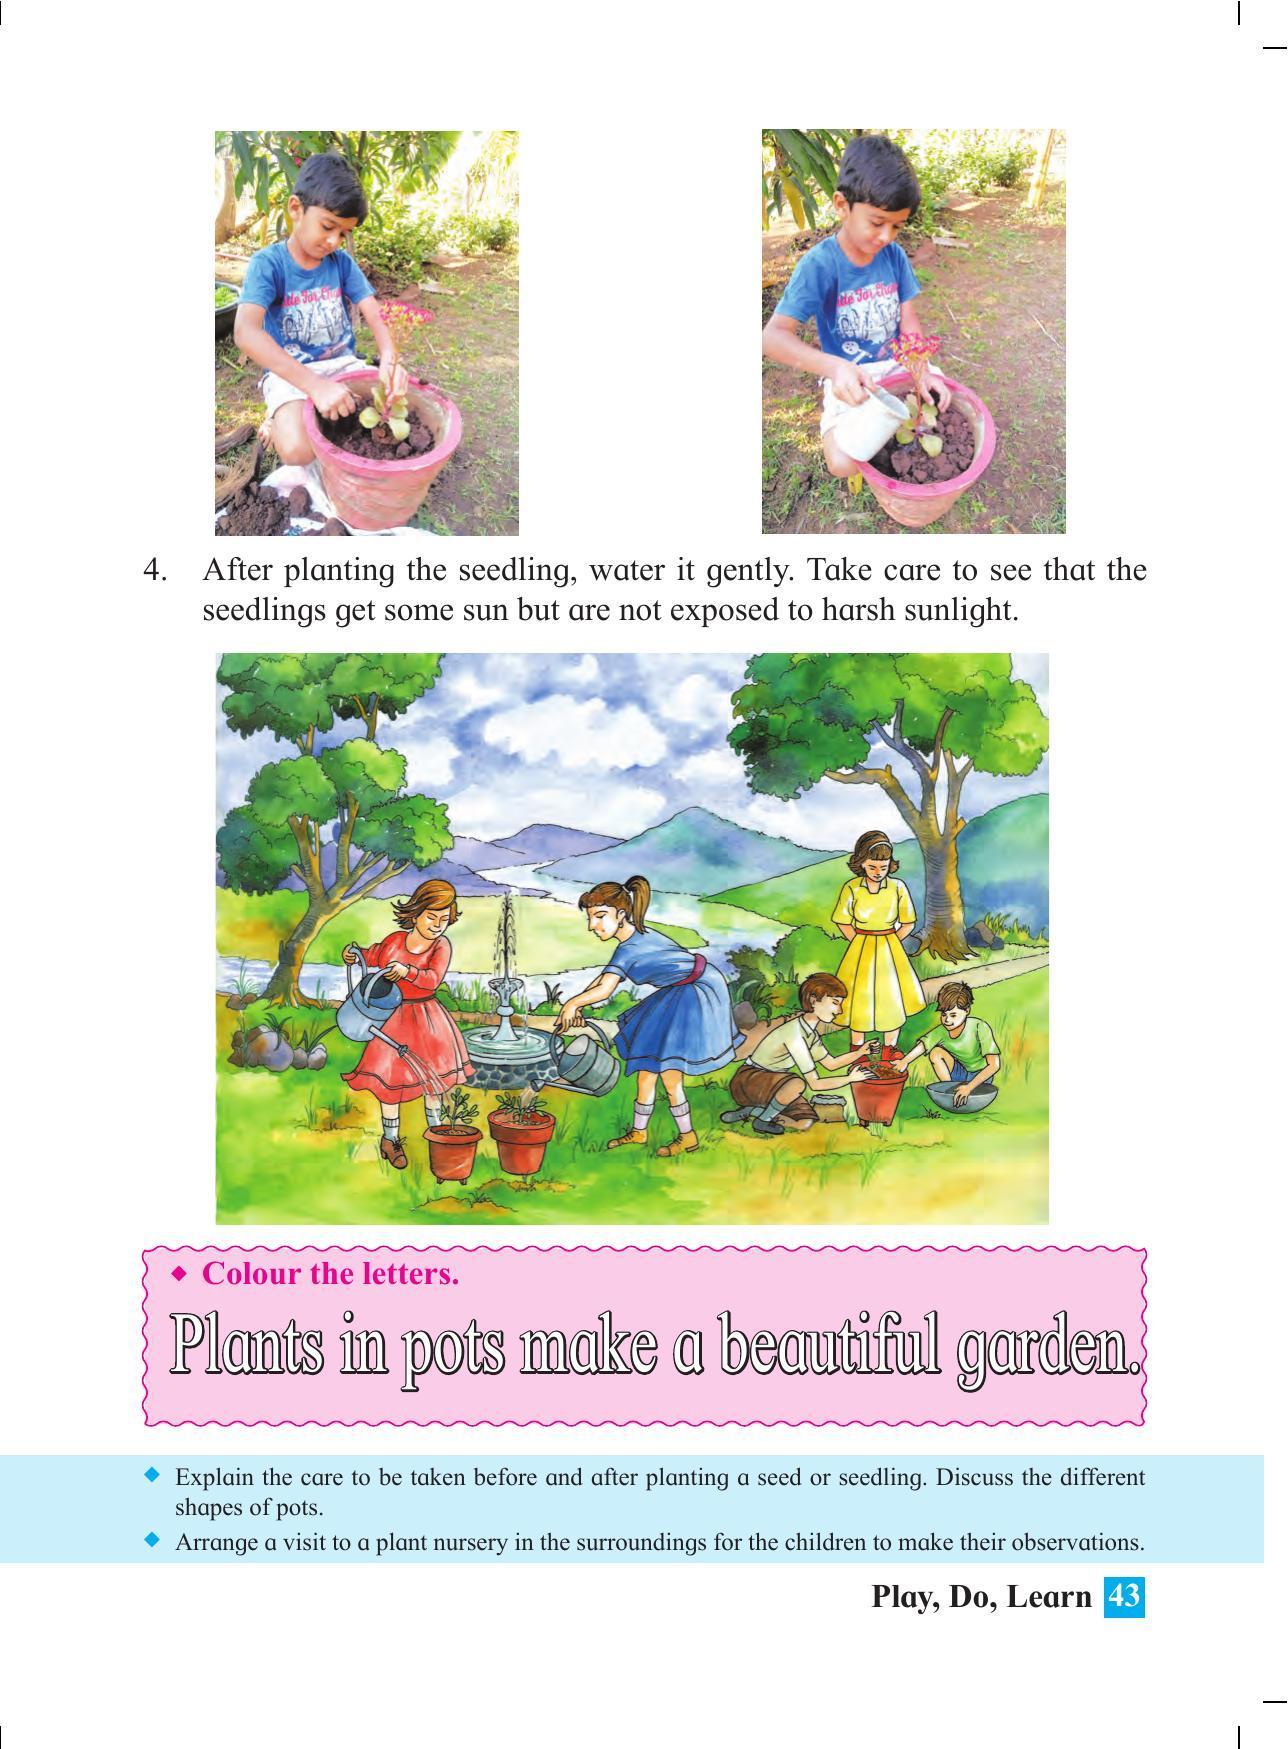 Maharashtra Board Class 4 Play Do Learn (English Medium) Textbook - Page 52